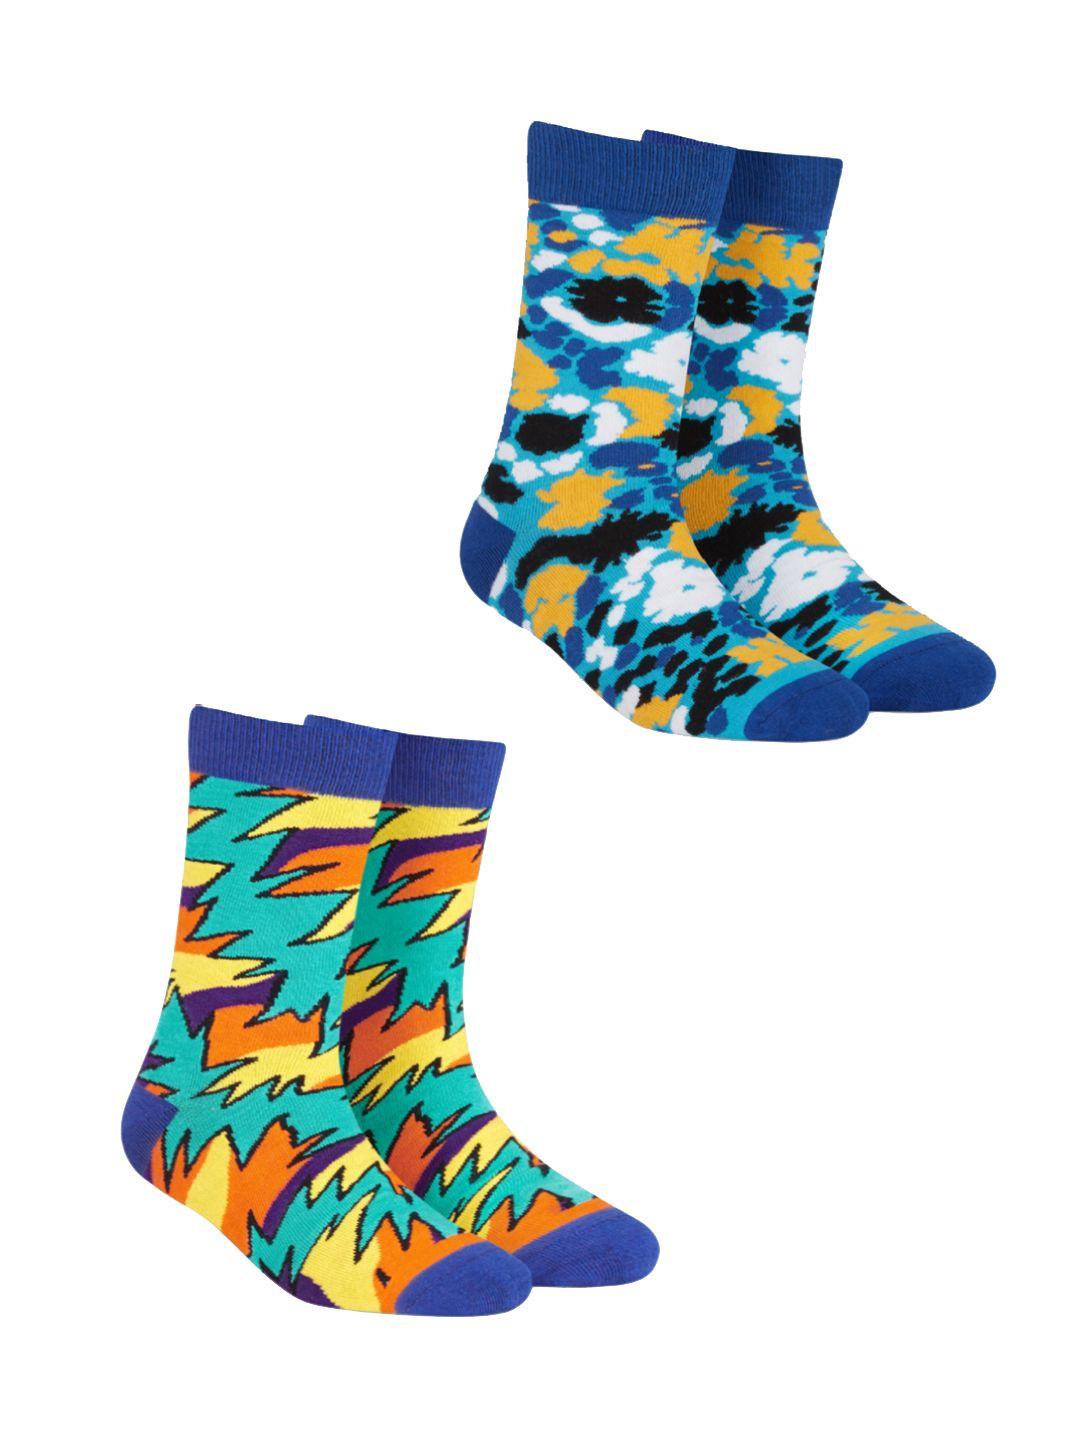 dynamocks unisex pack of 2 patterned calf-length socks